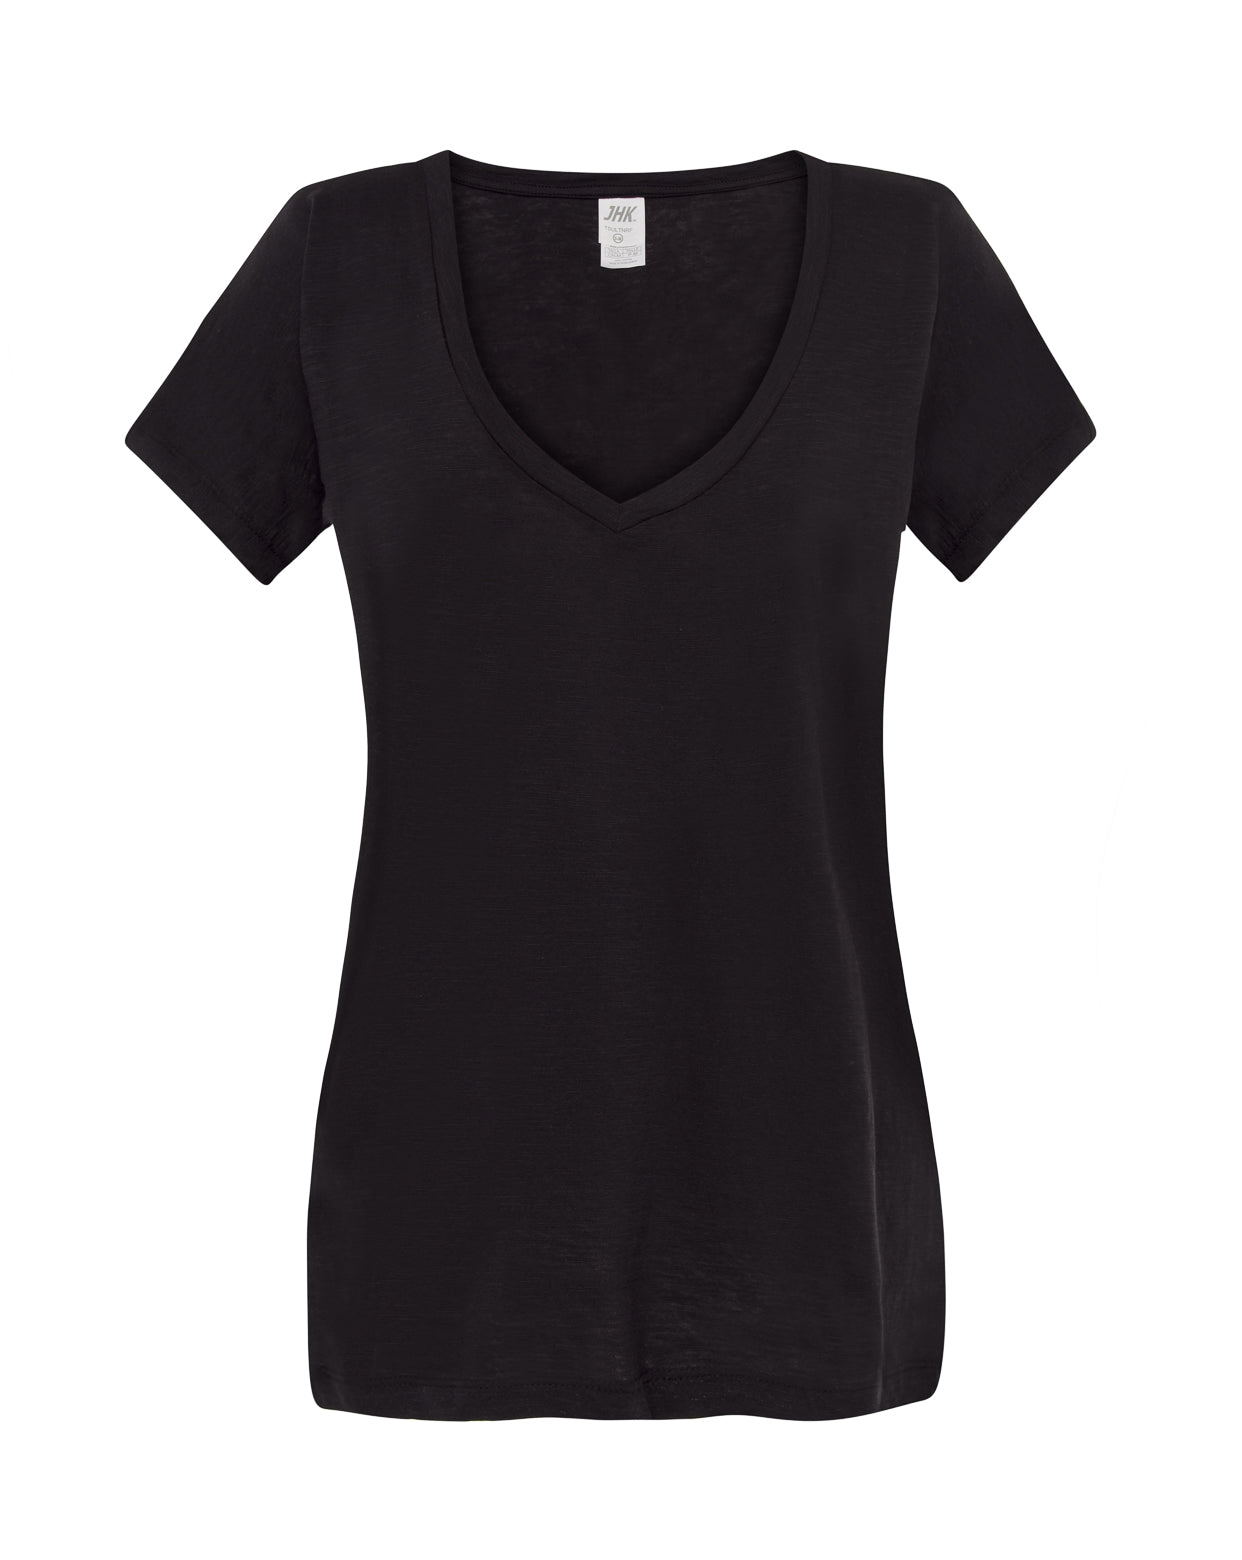 Camiseta de mujer manga corta y escote de pico - mr-personaliza